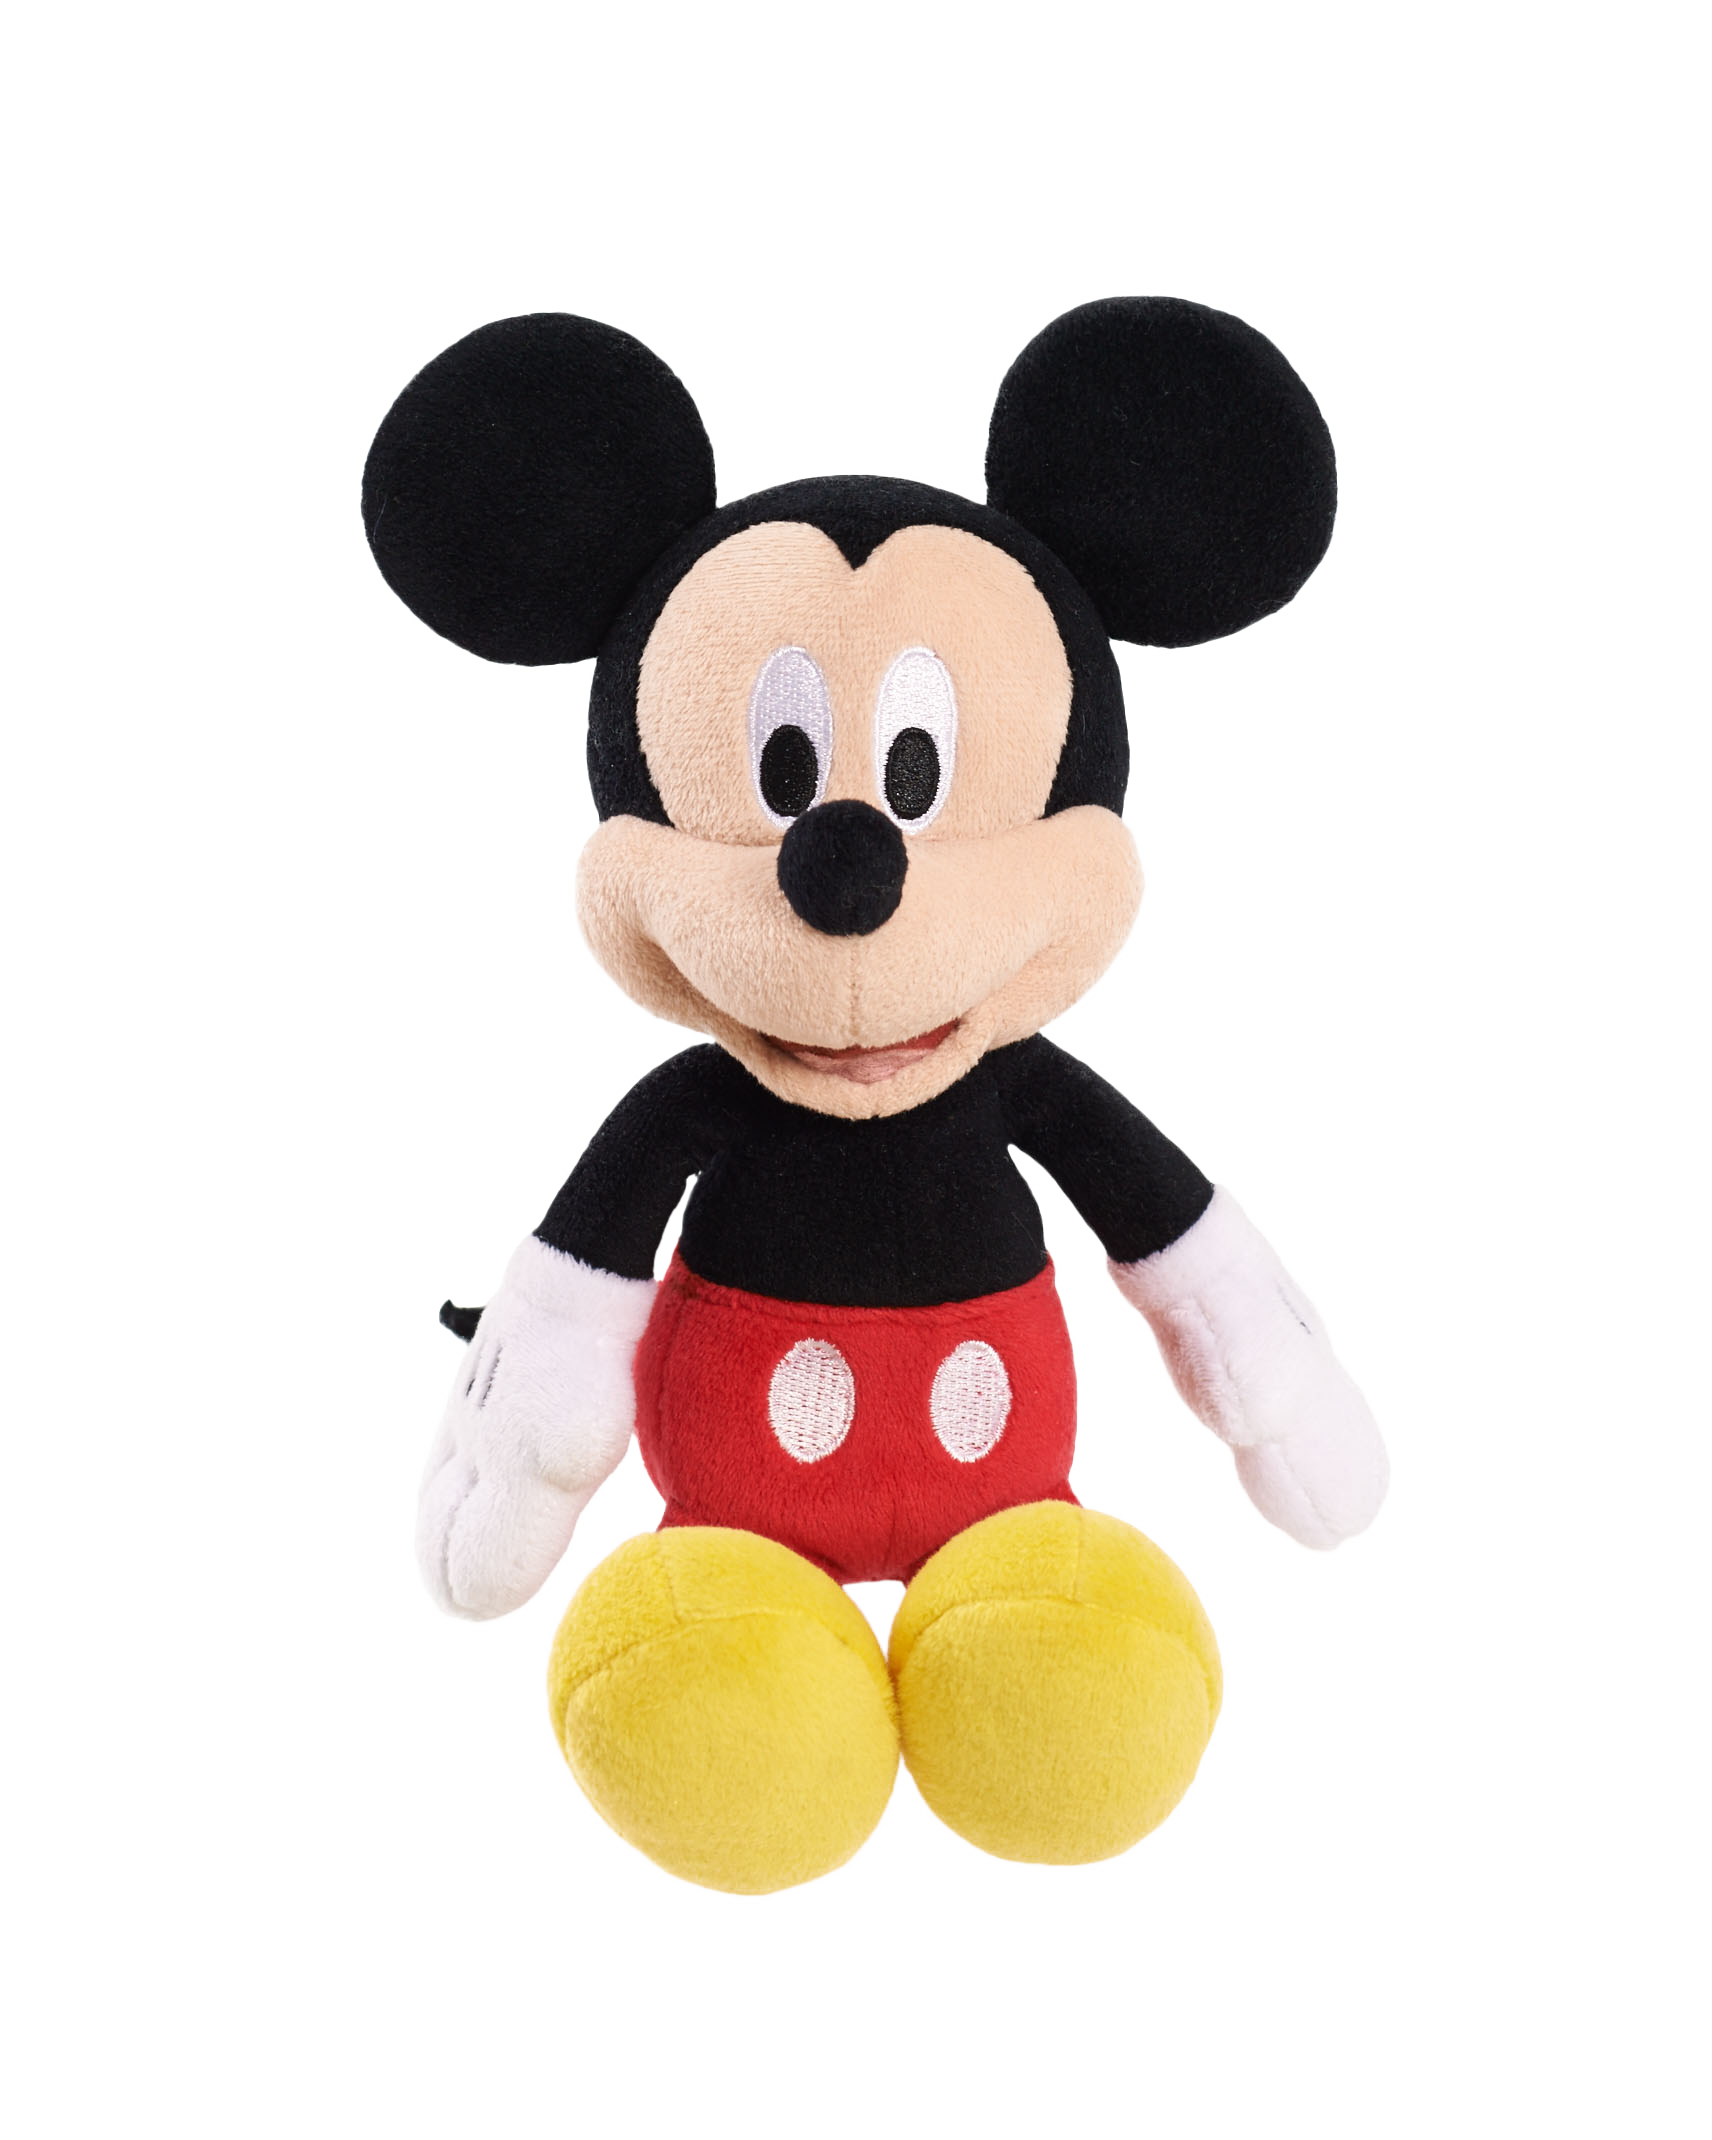 Disney 8" Beanz Plush Toy - Mickey Mouse